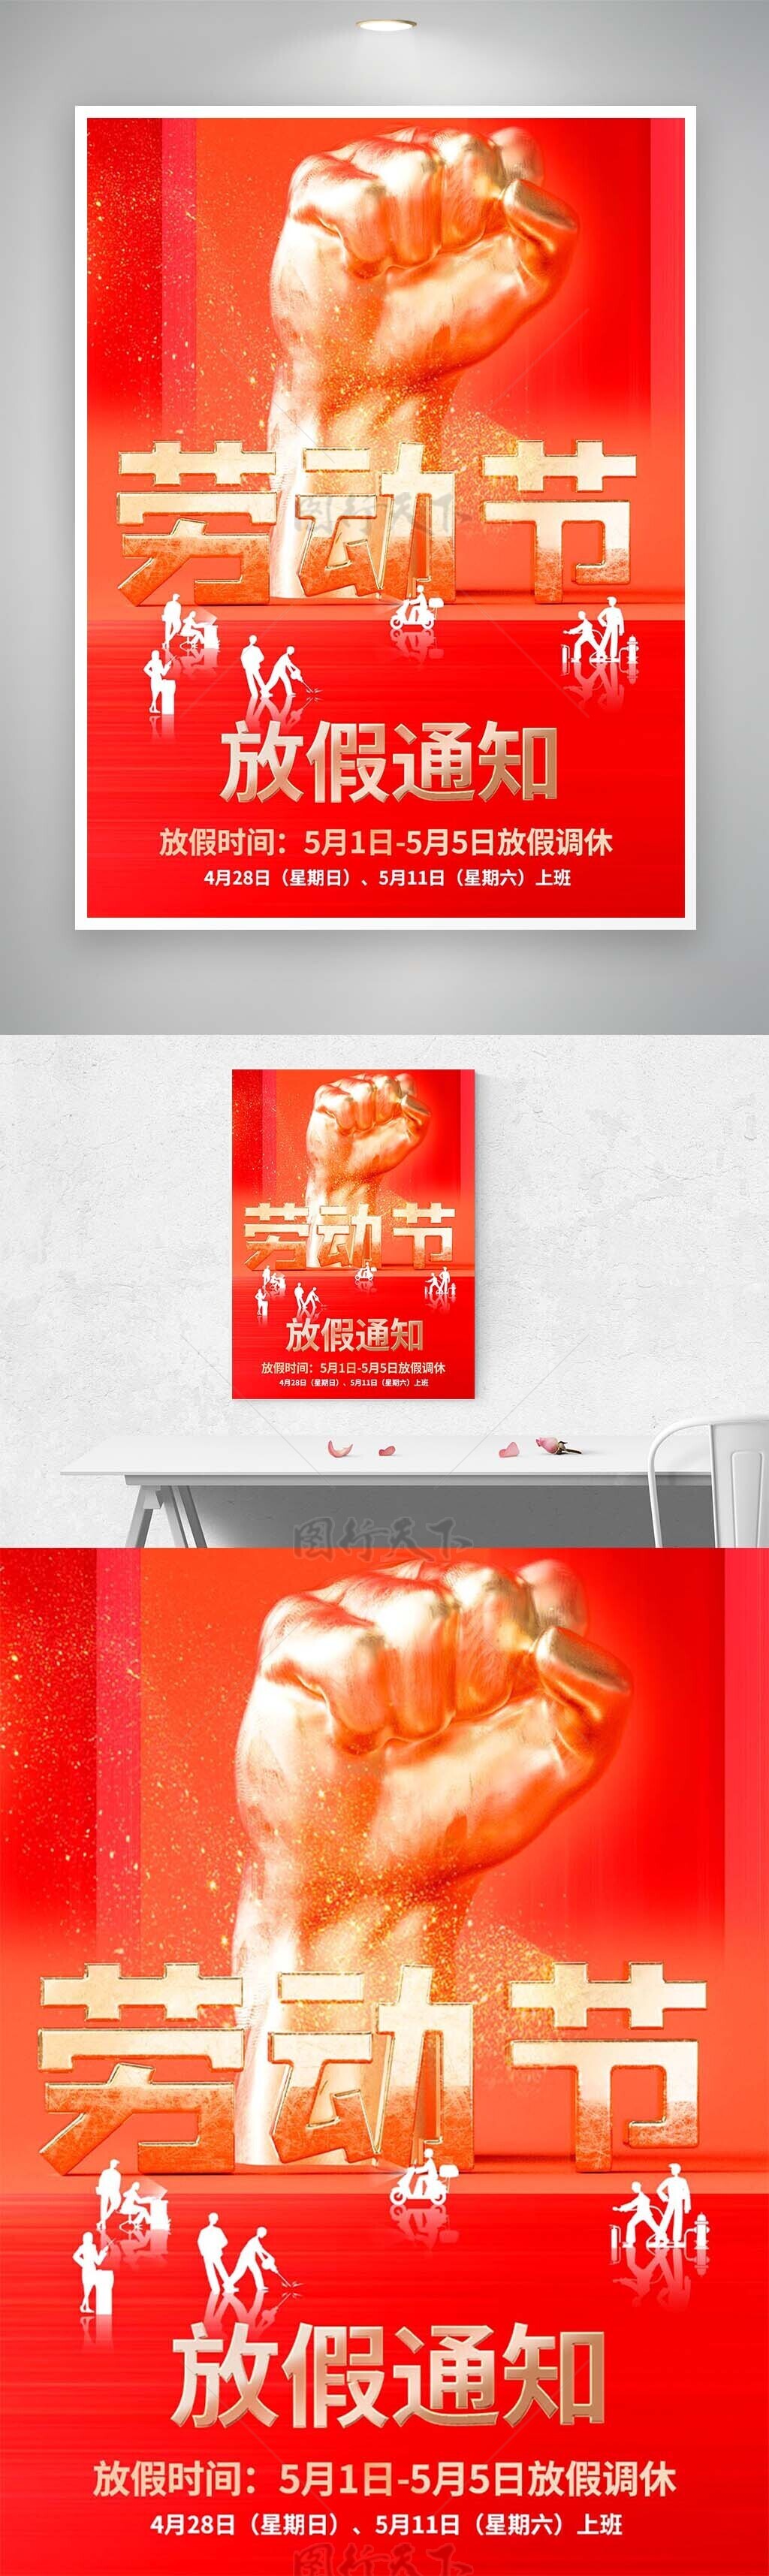 劳动节放假通知中国红大气海报